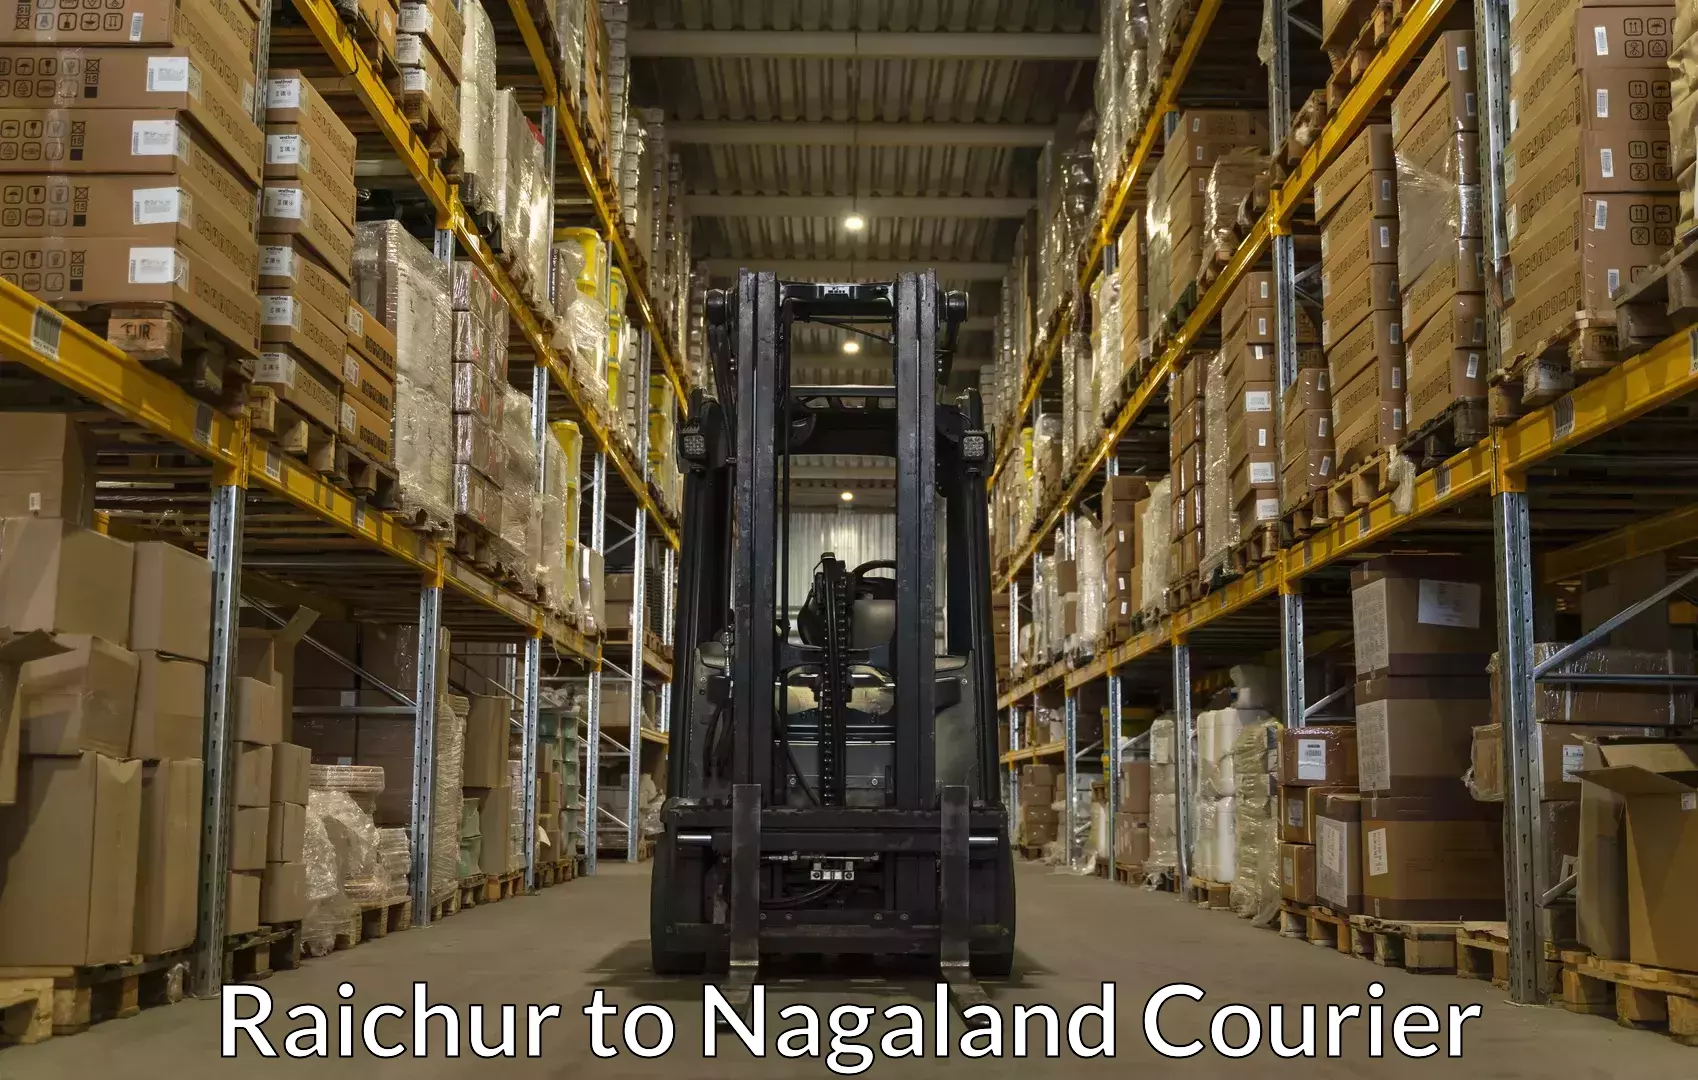 Baggage shipping service Raichur to Nagaland